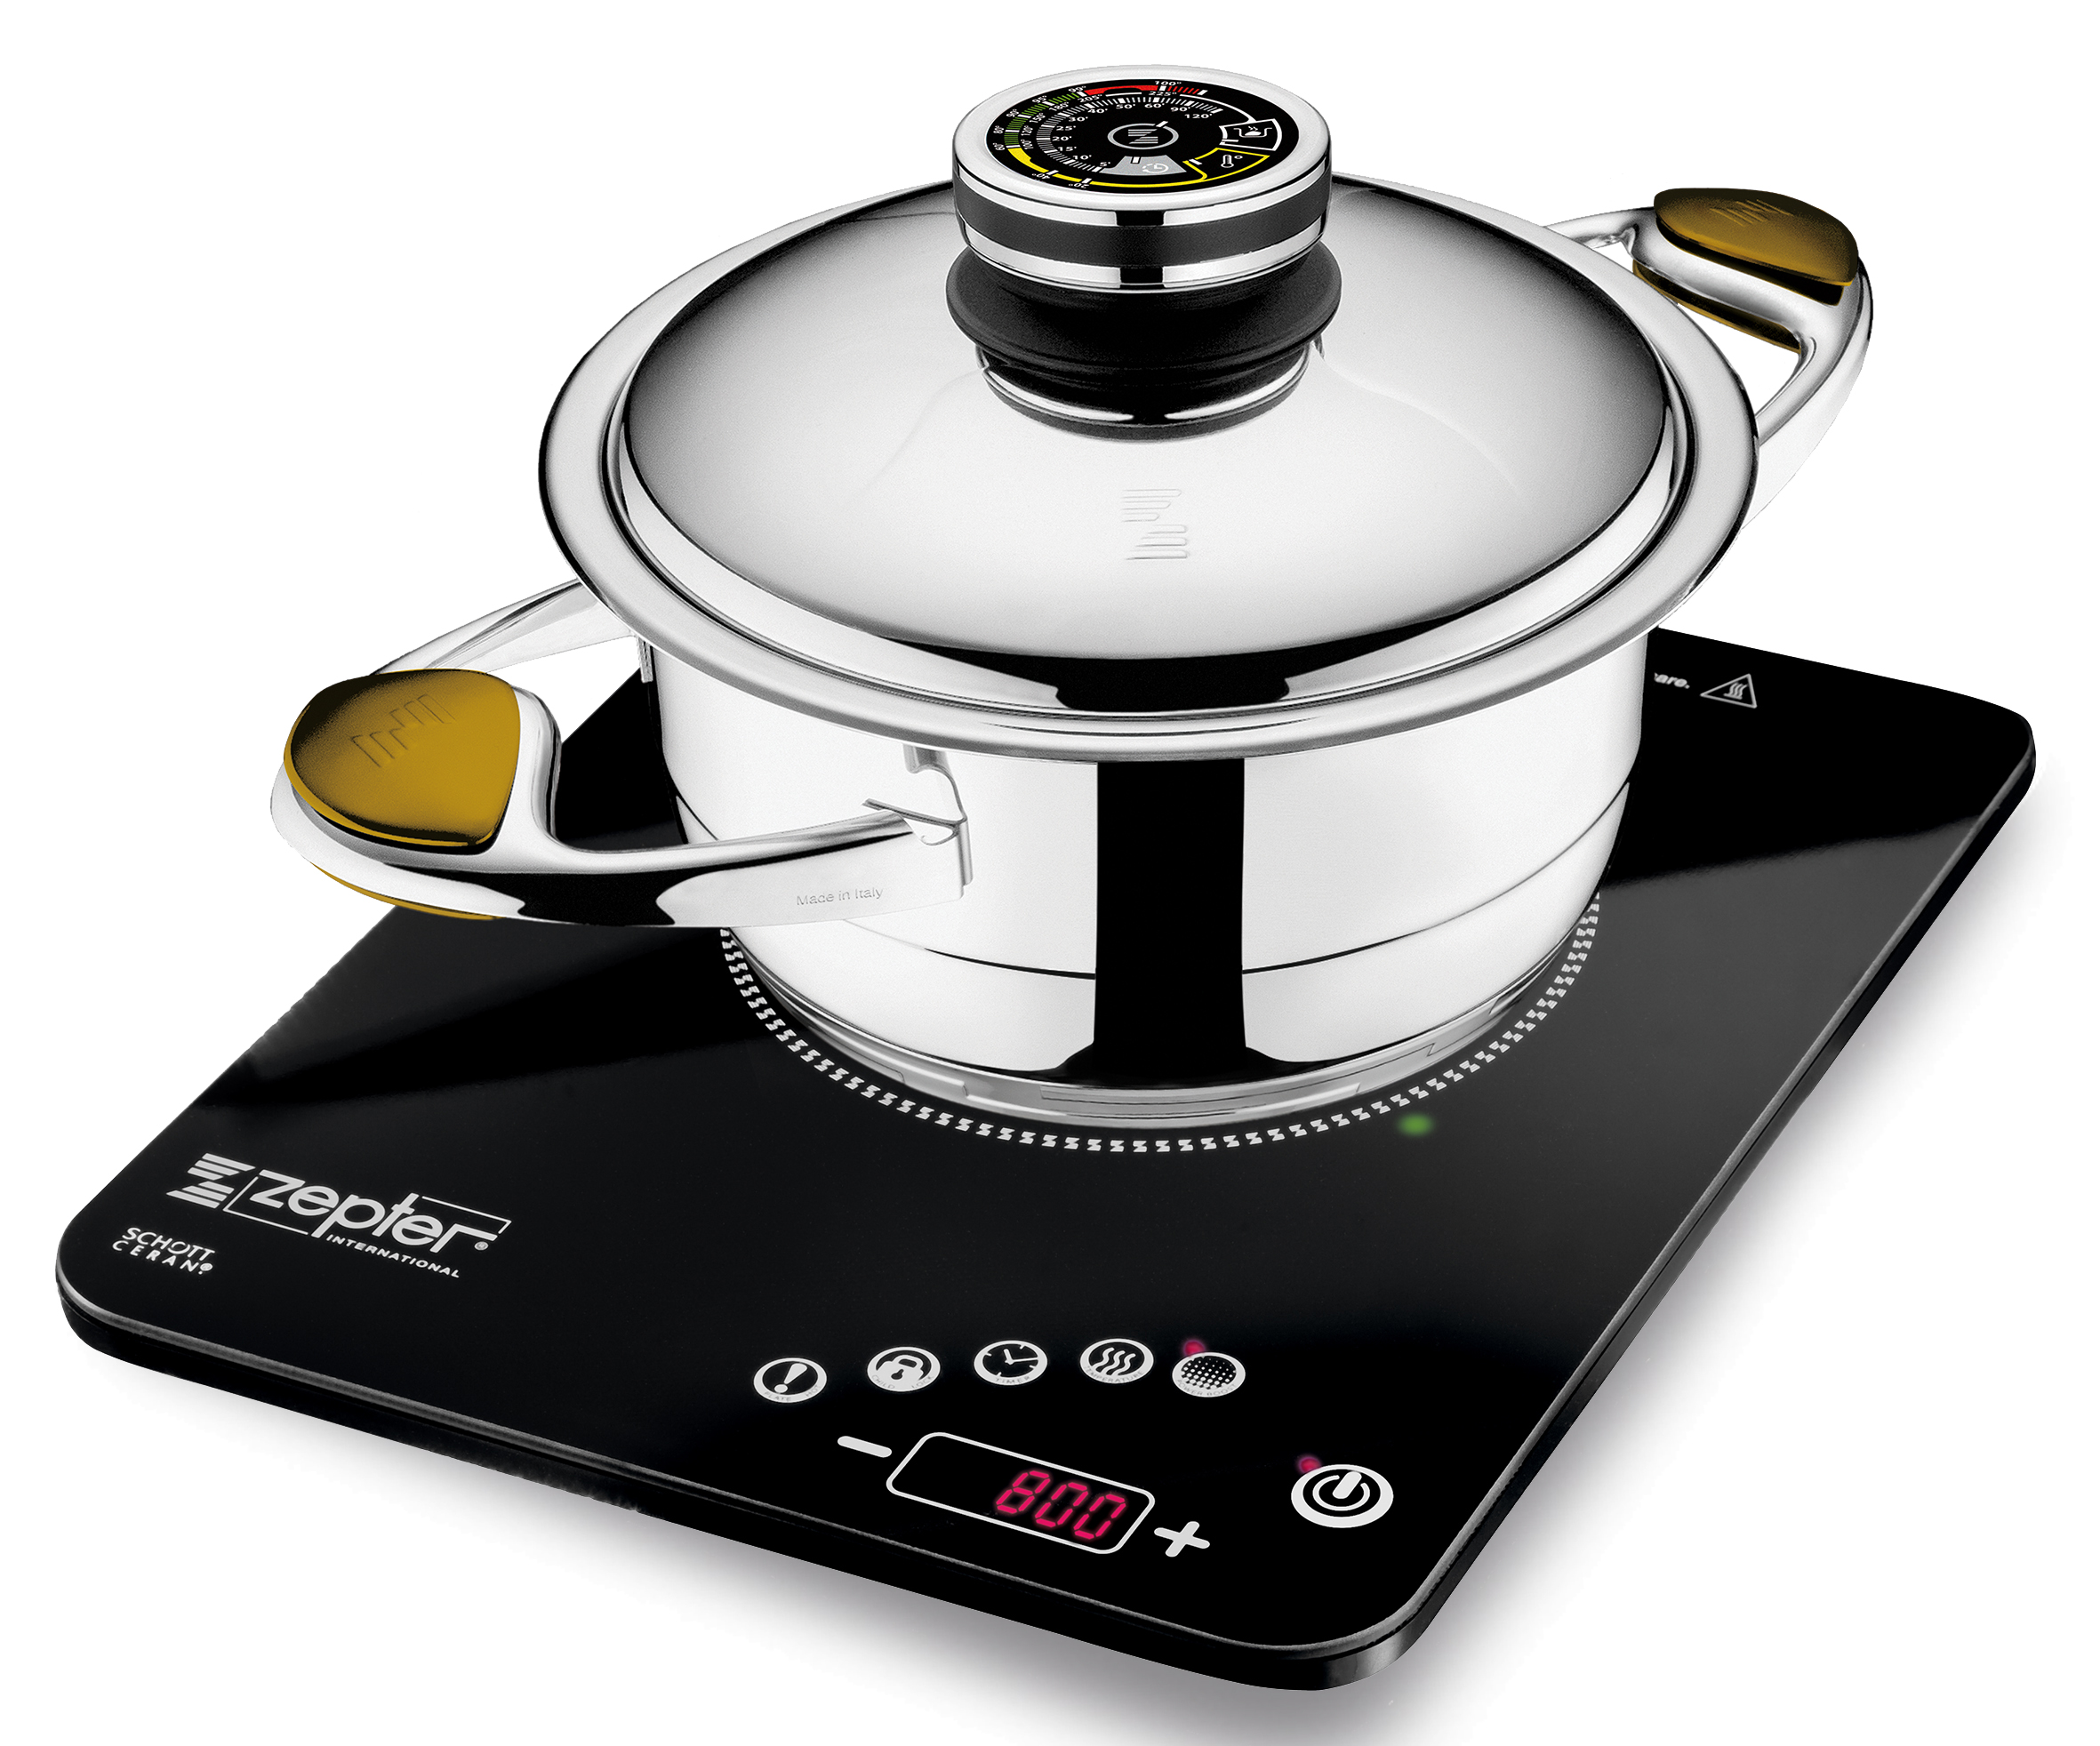 Toate vasele Zepter Masterpiece Cookware au baza acuterm-compactă, care funcţionează perfect cu noua plită cu inducţie şi radio-control.